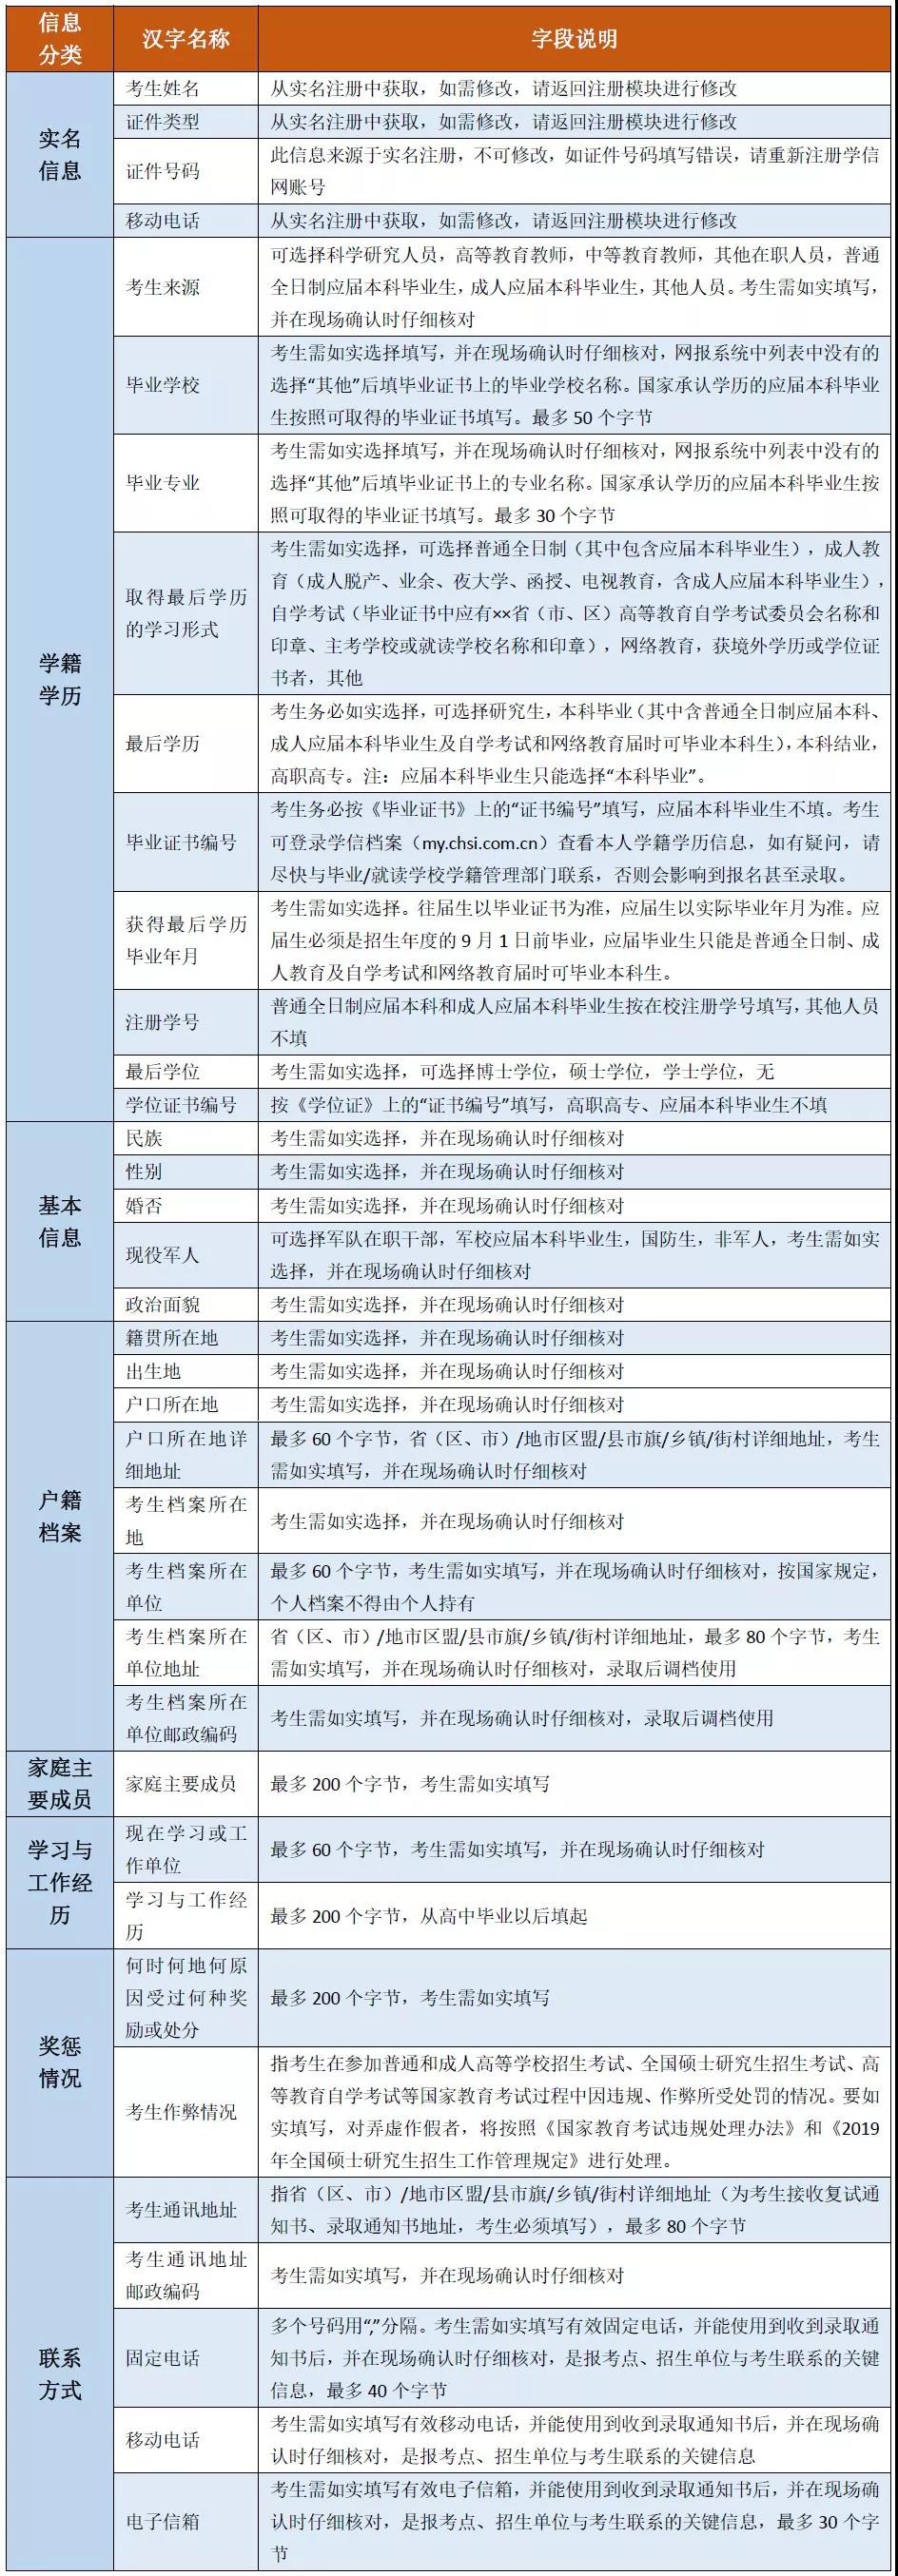 上海交通大学MBA/EMBA网上报名图文指引